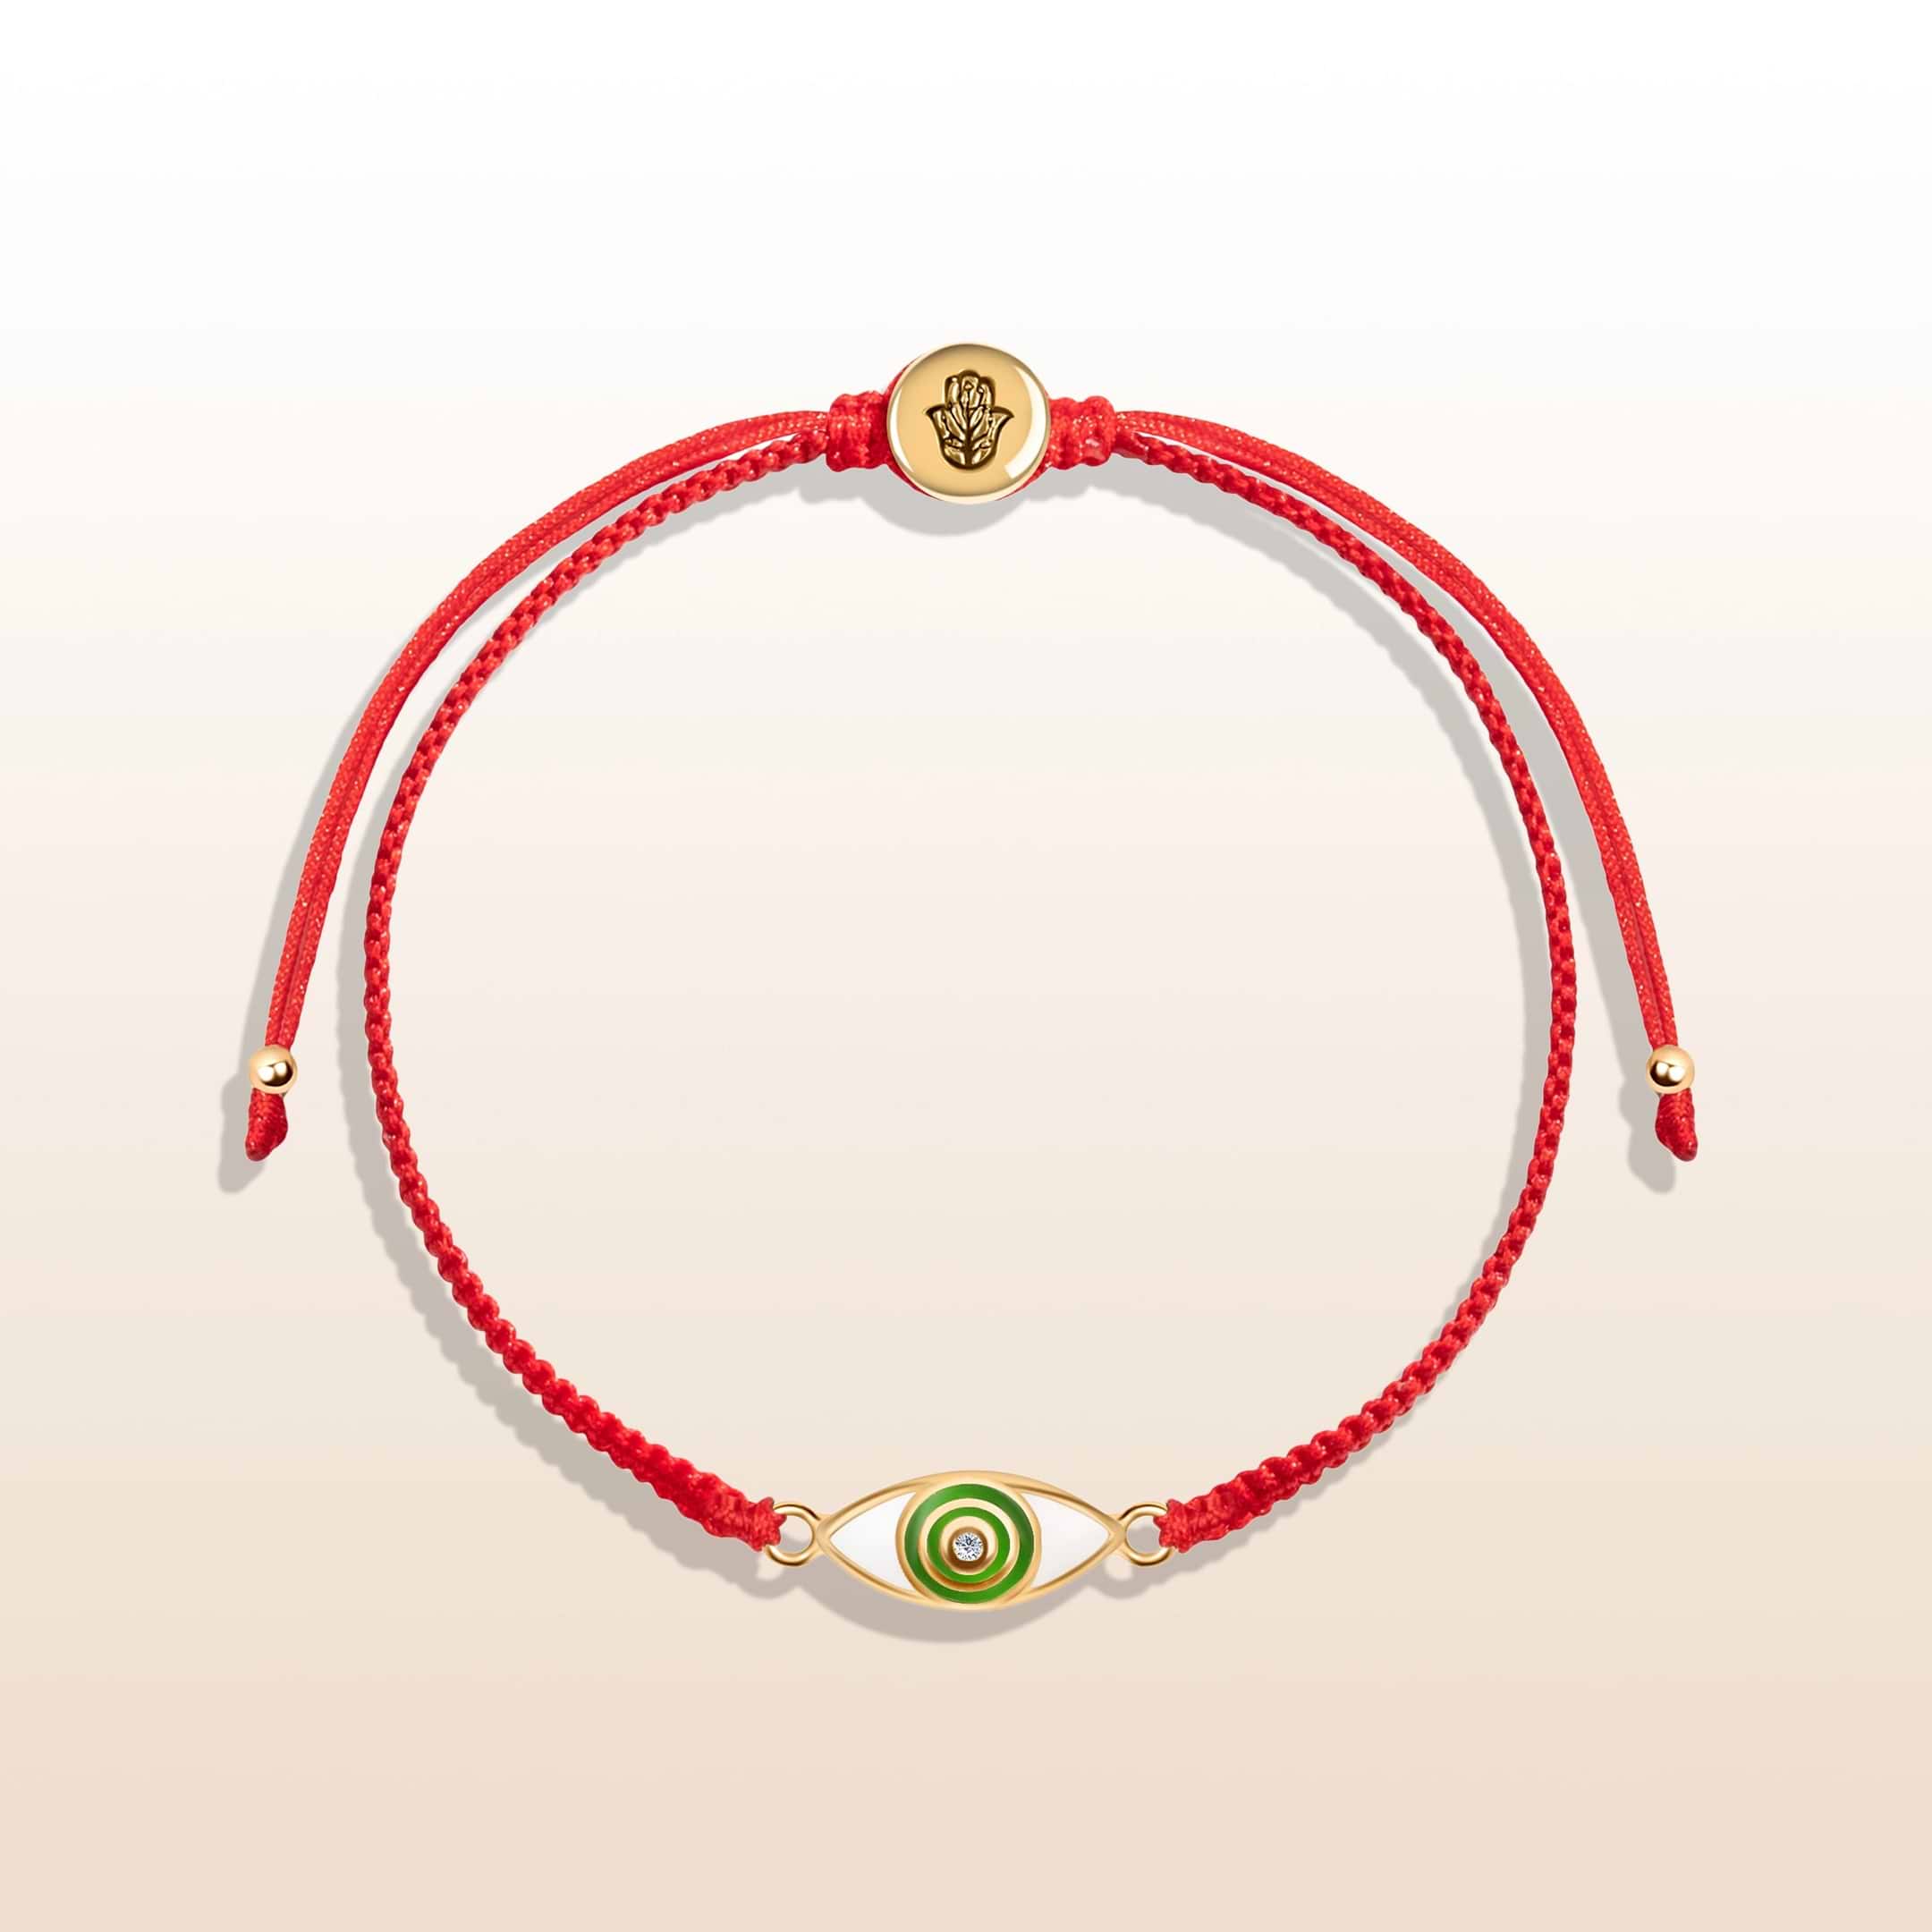 Spiritual Cleansing - Red String Evil Eye Charm Bracelet